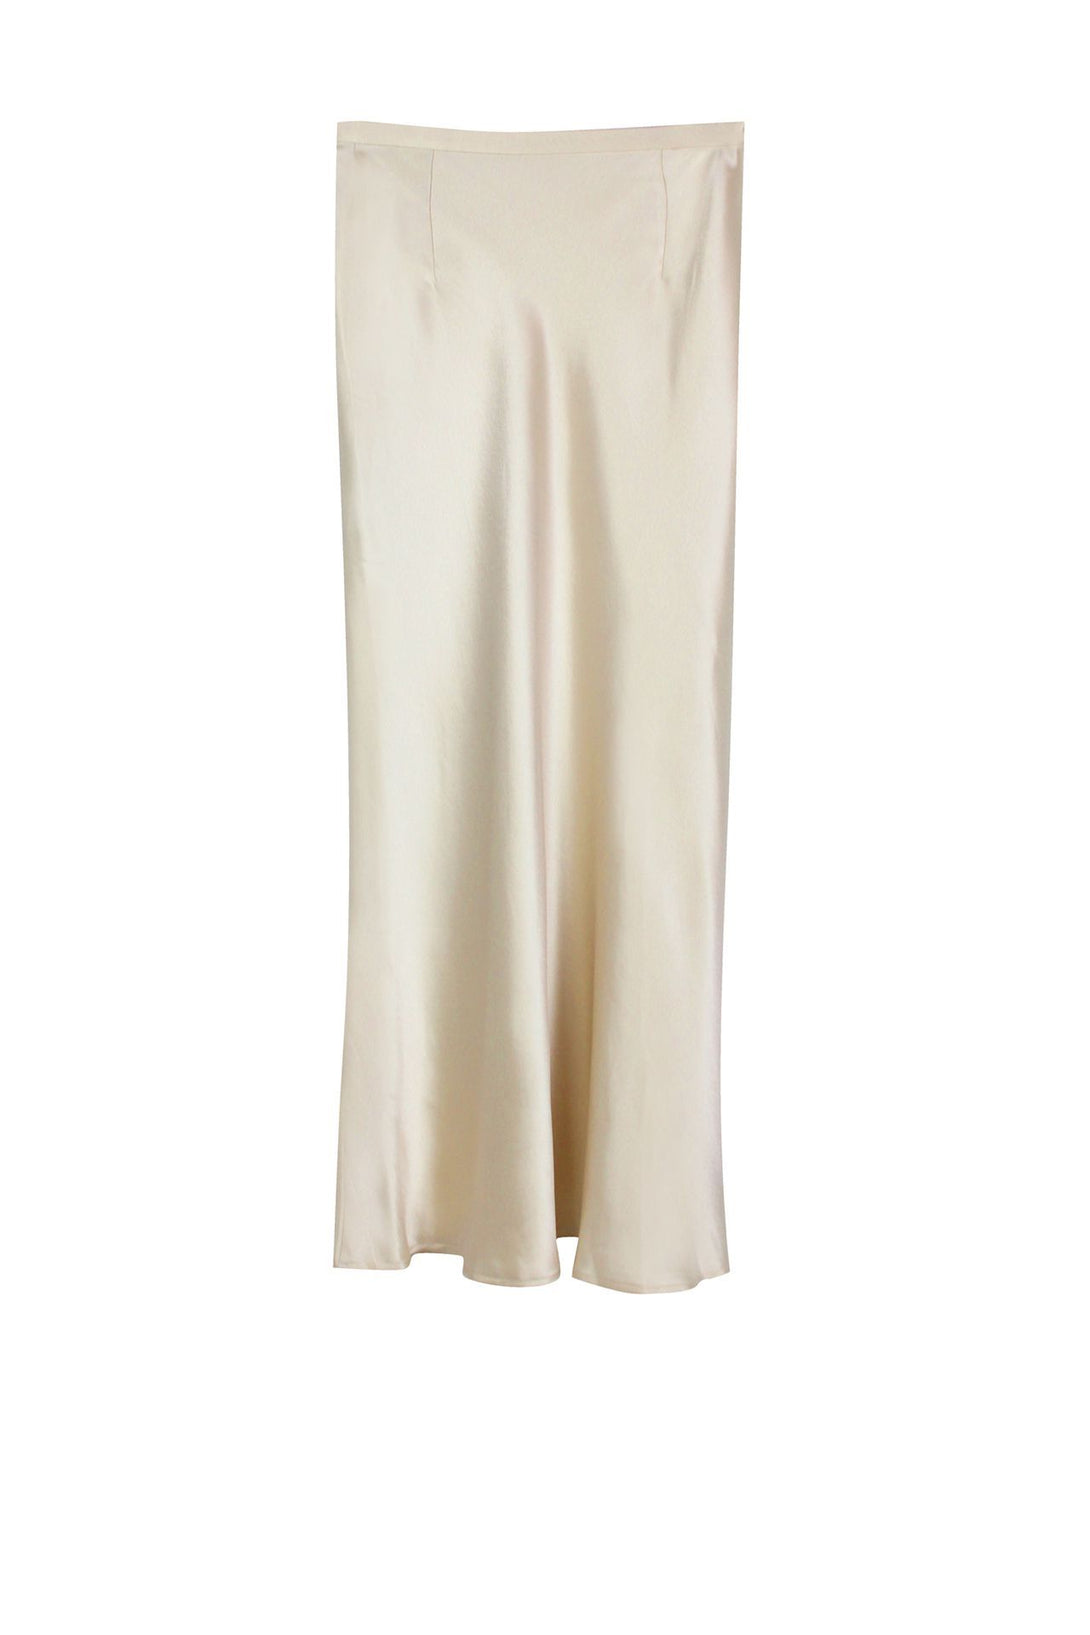 Designer-Silk-Skirt-In-White-For-Womens-By-Kyle-Richards